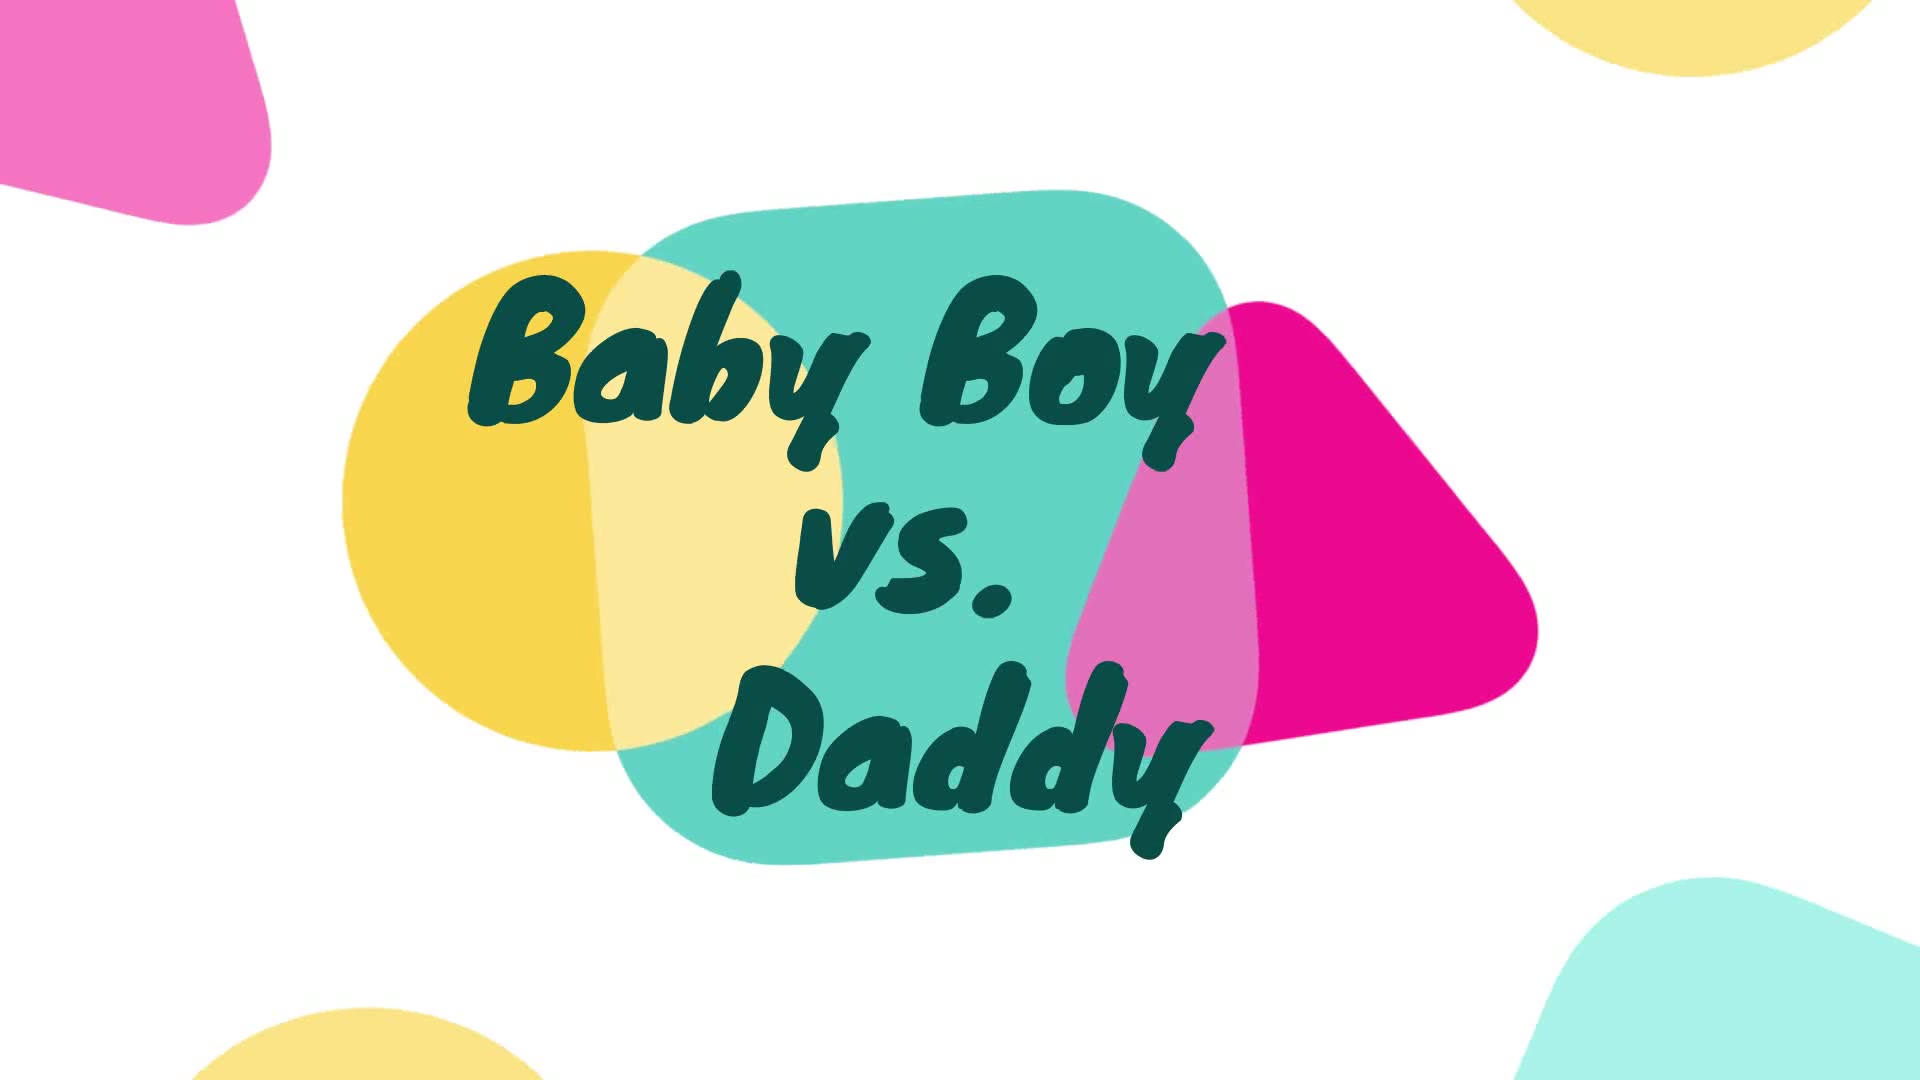 Baby Boy vs. Daddy 1